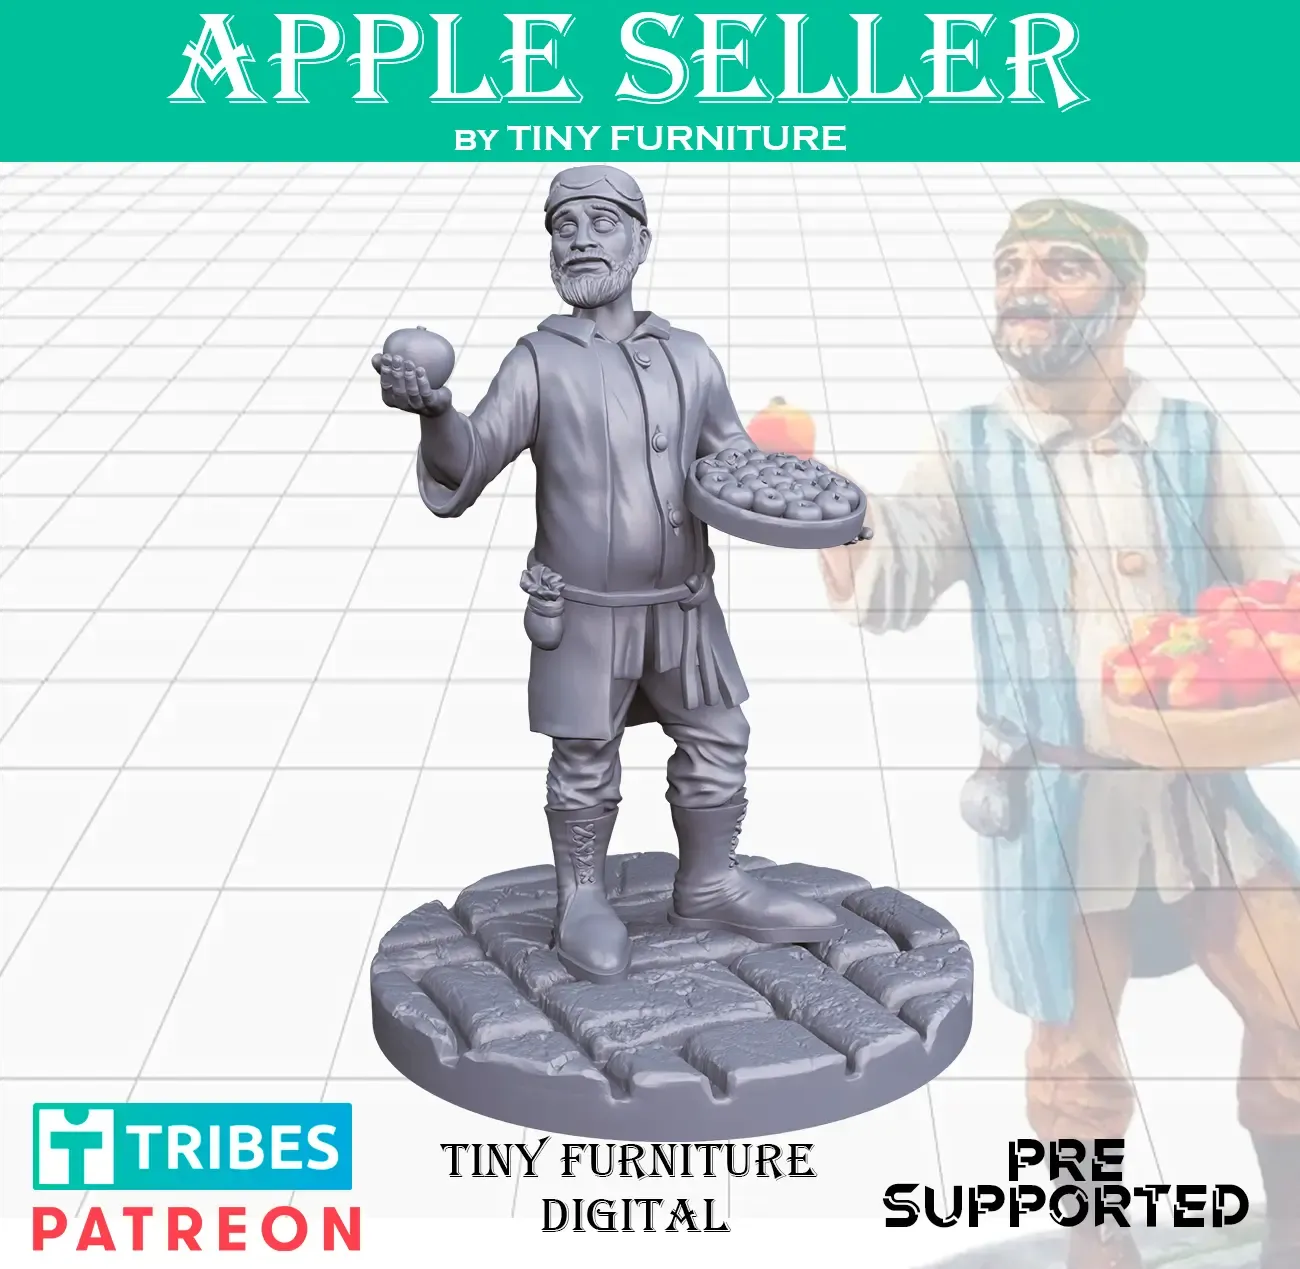 Apple seller